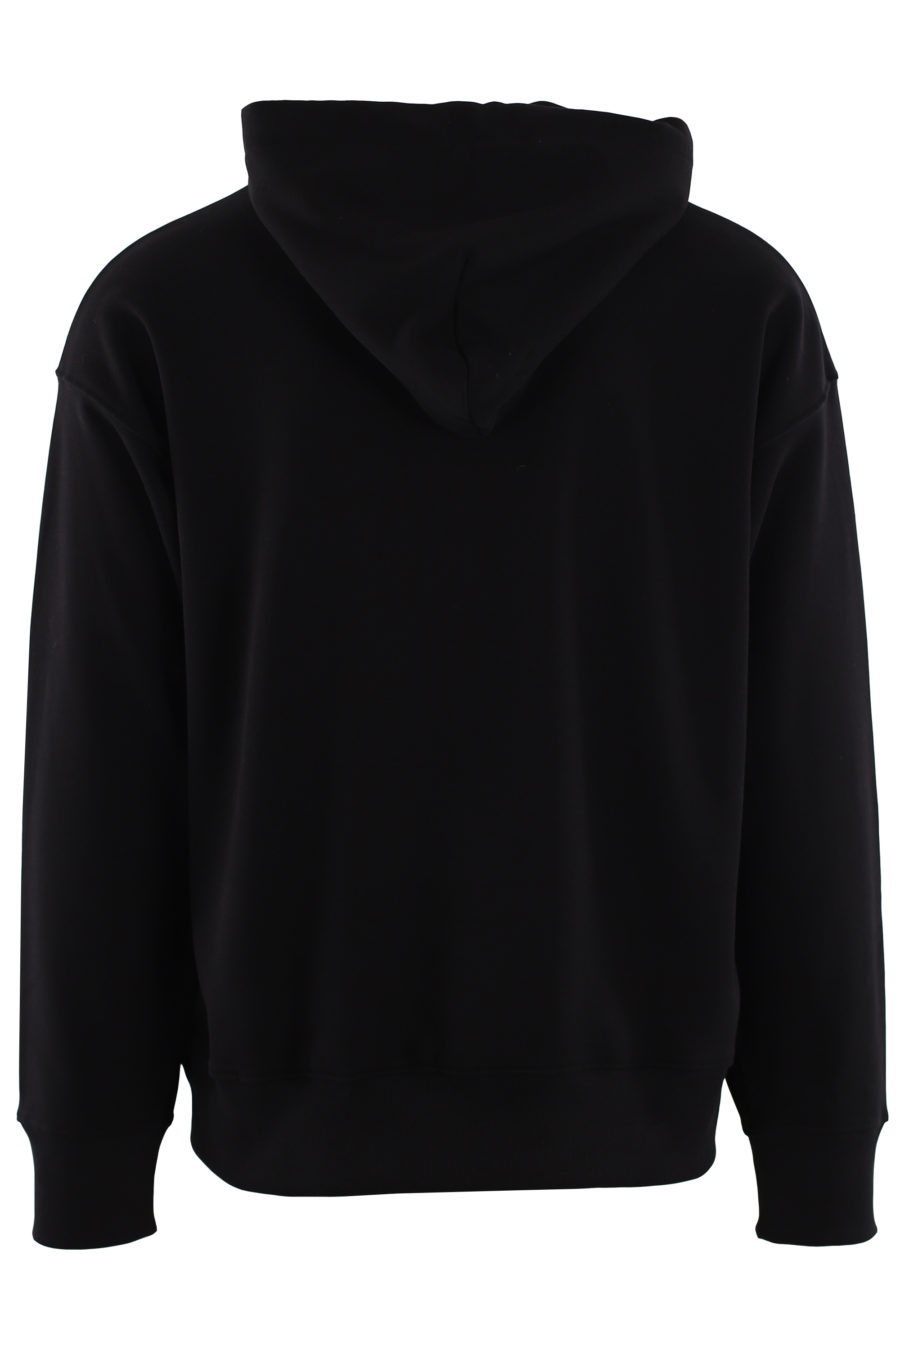 Sudadera negra con capucha y logo blanco y rojo bordado - IMG 0462